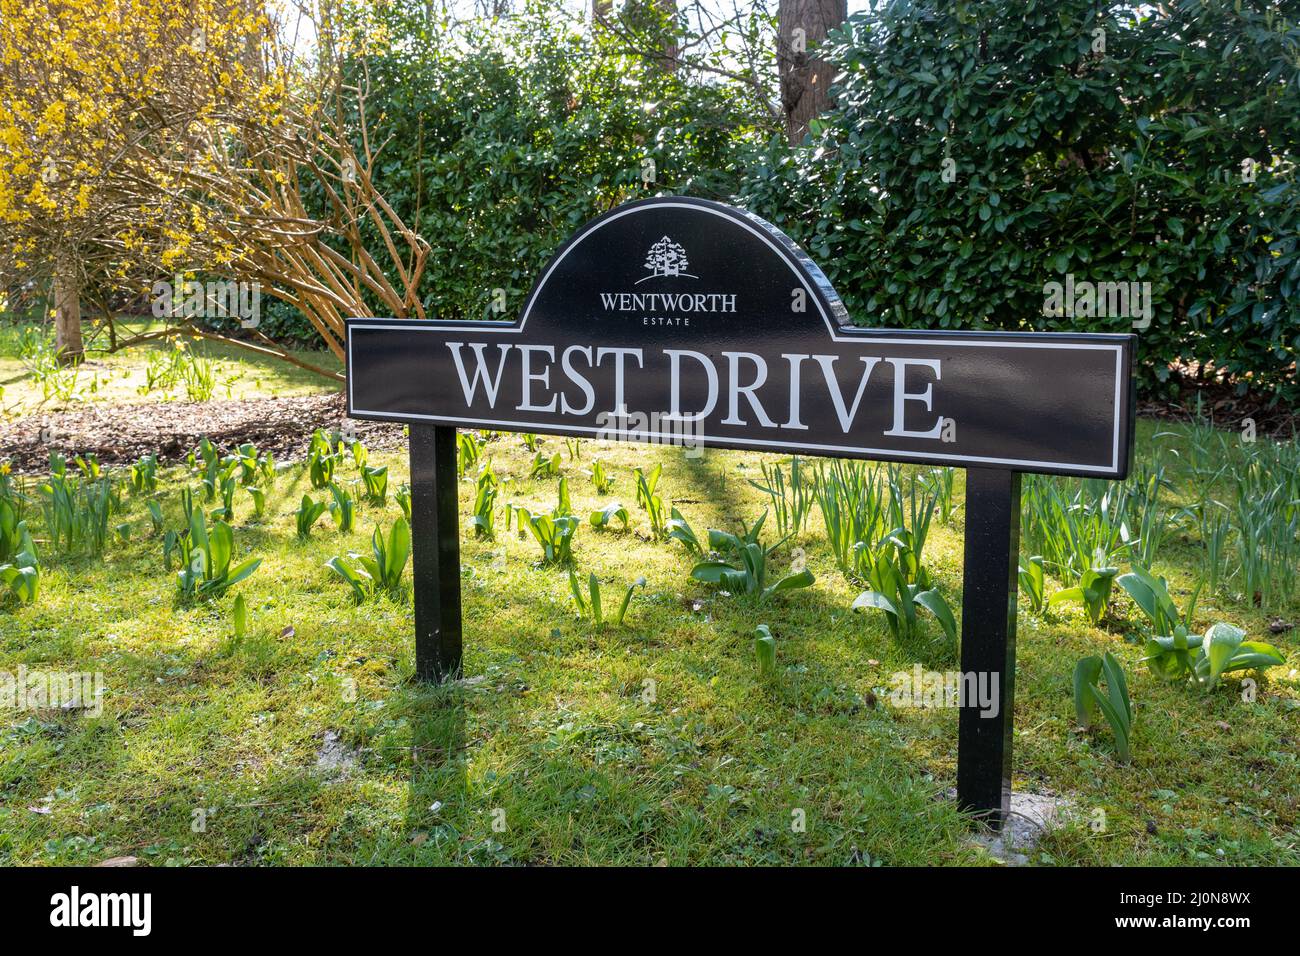 Wentworth Estate Schild, ein privates Anwesen mit großen teuren Häusern in der Nähe des Golfclubs in Surrey, England, Großbritannien Stockfoto